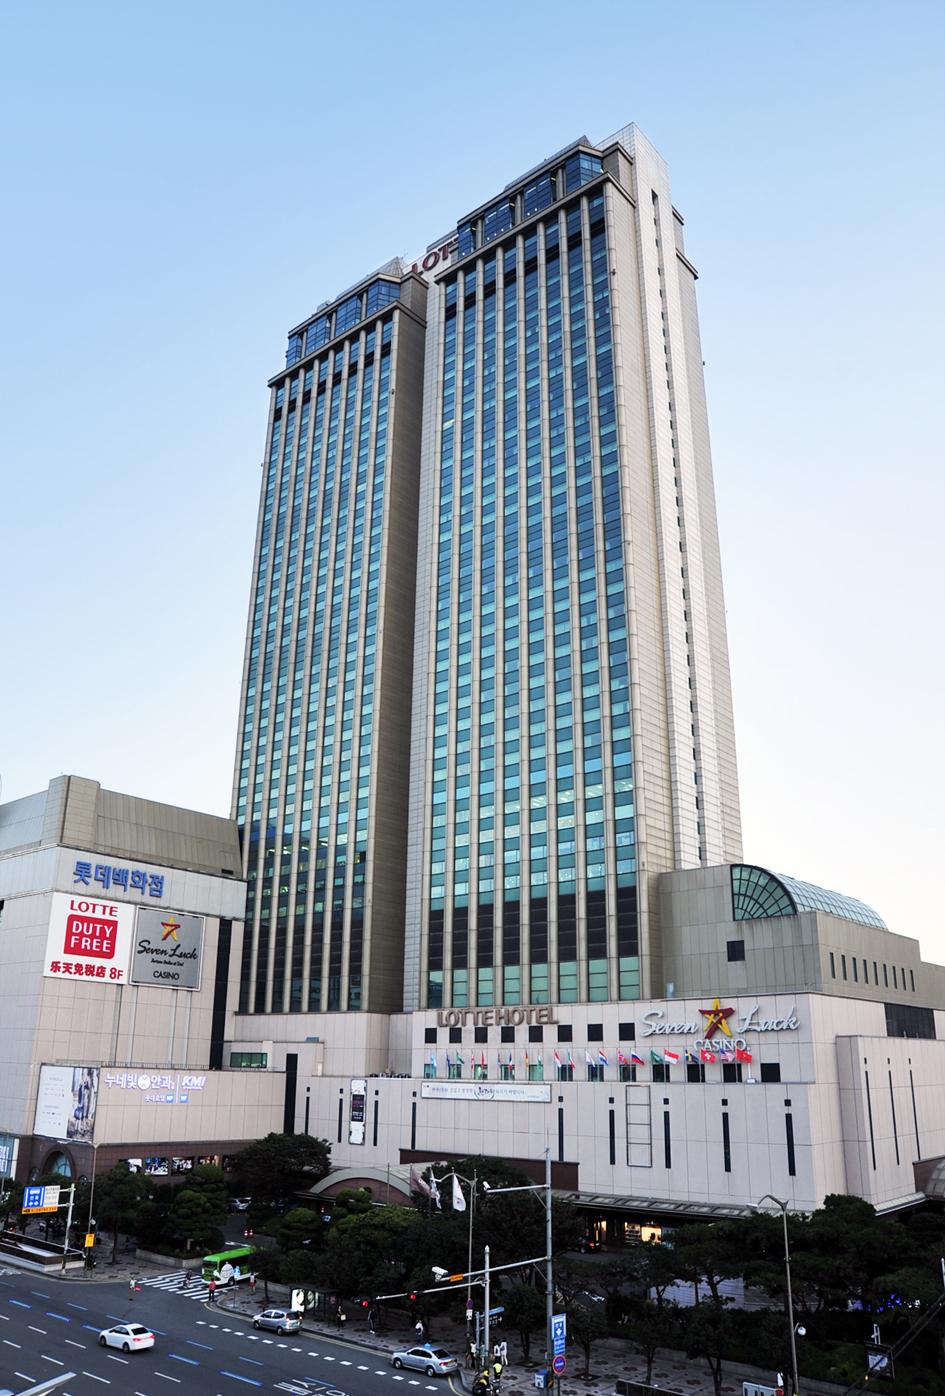 Lotte Hotel Busan4 (large)